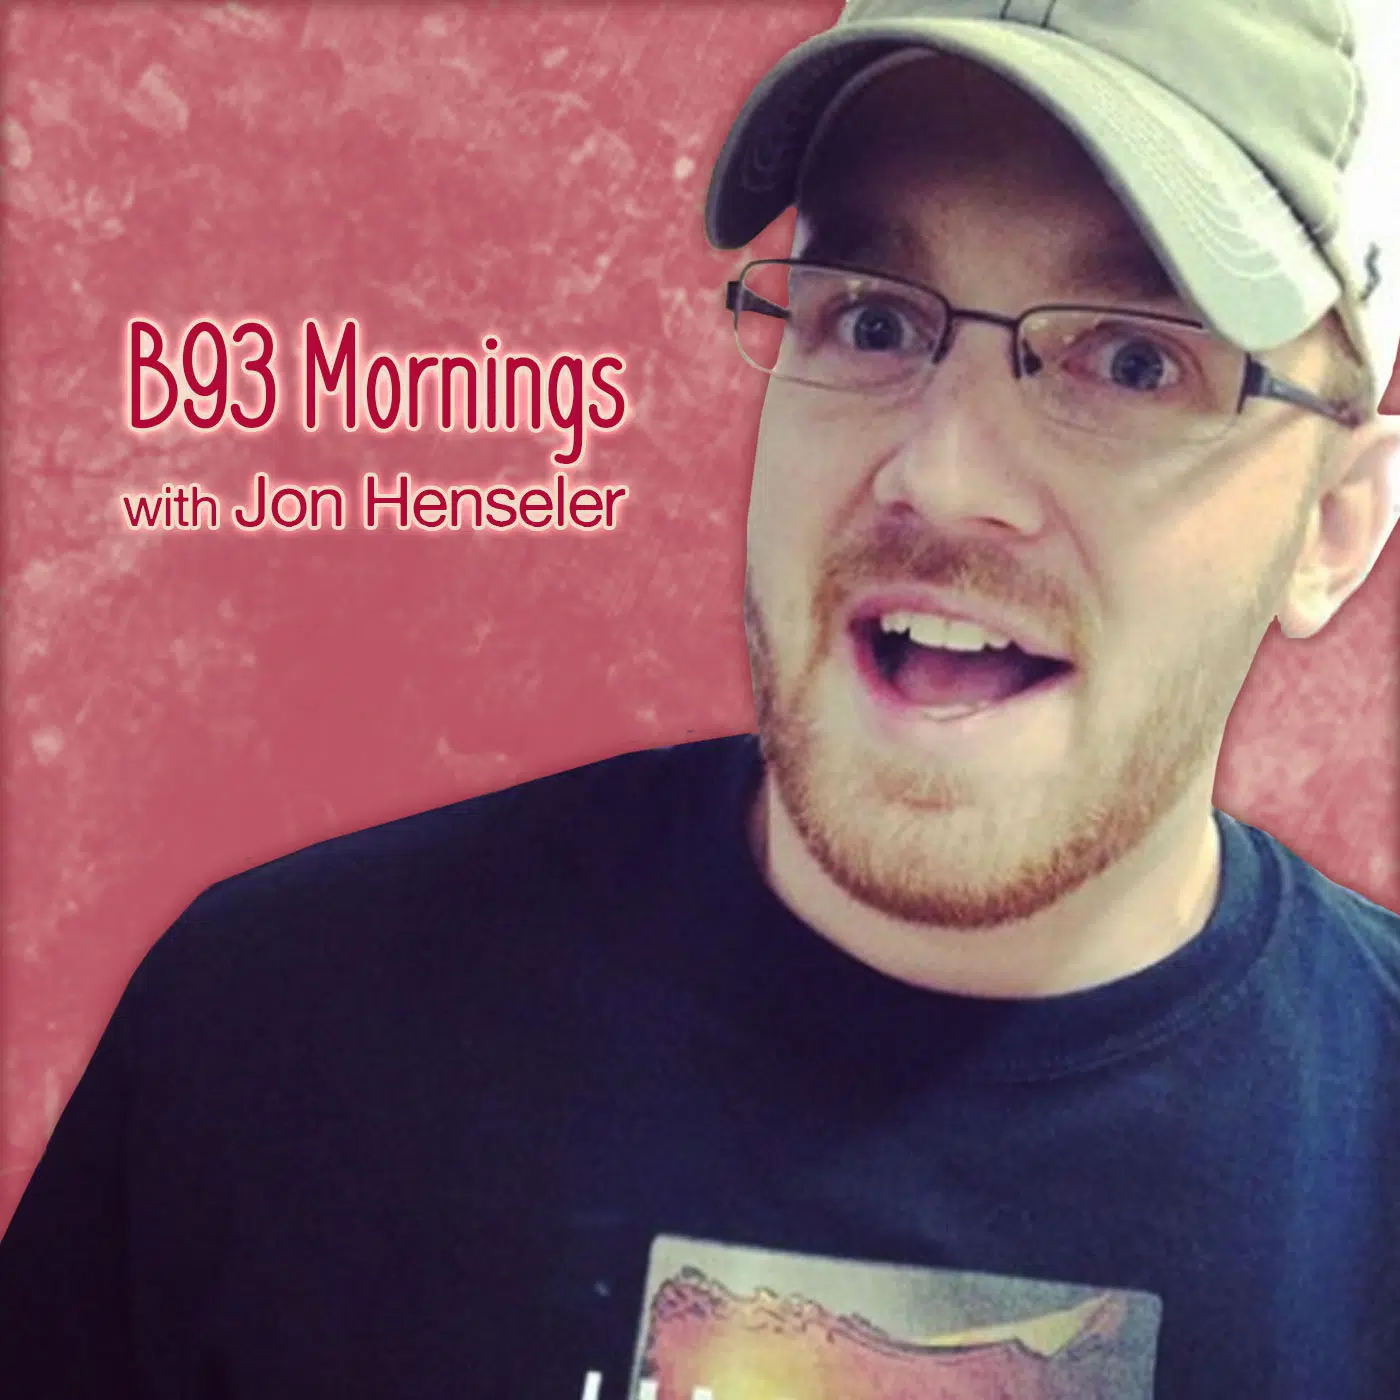 B93 Mornings with Jon Henseler